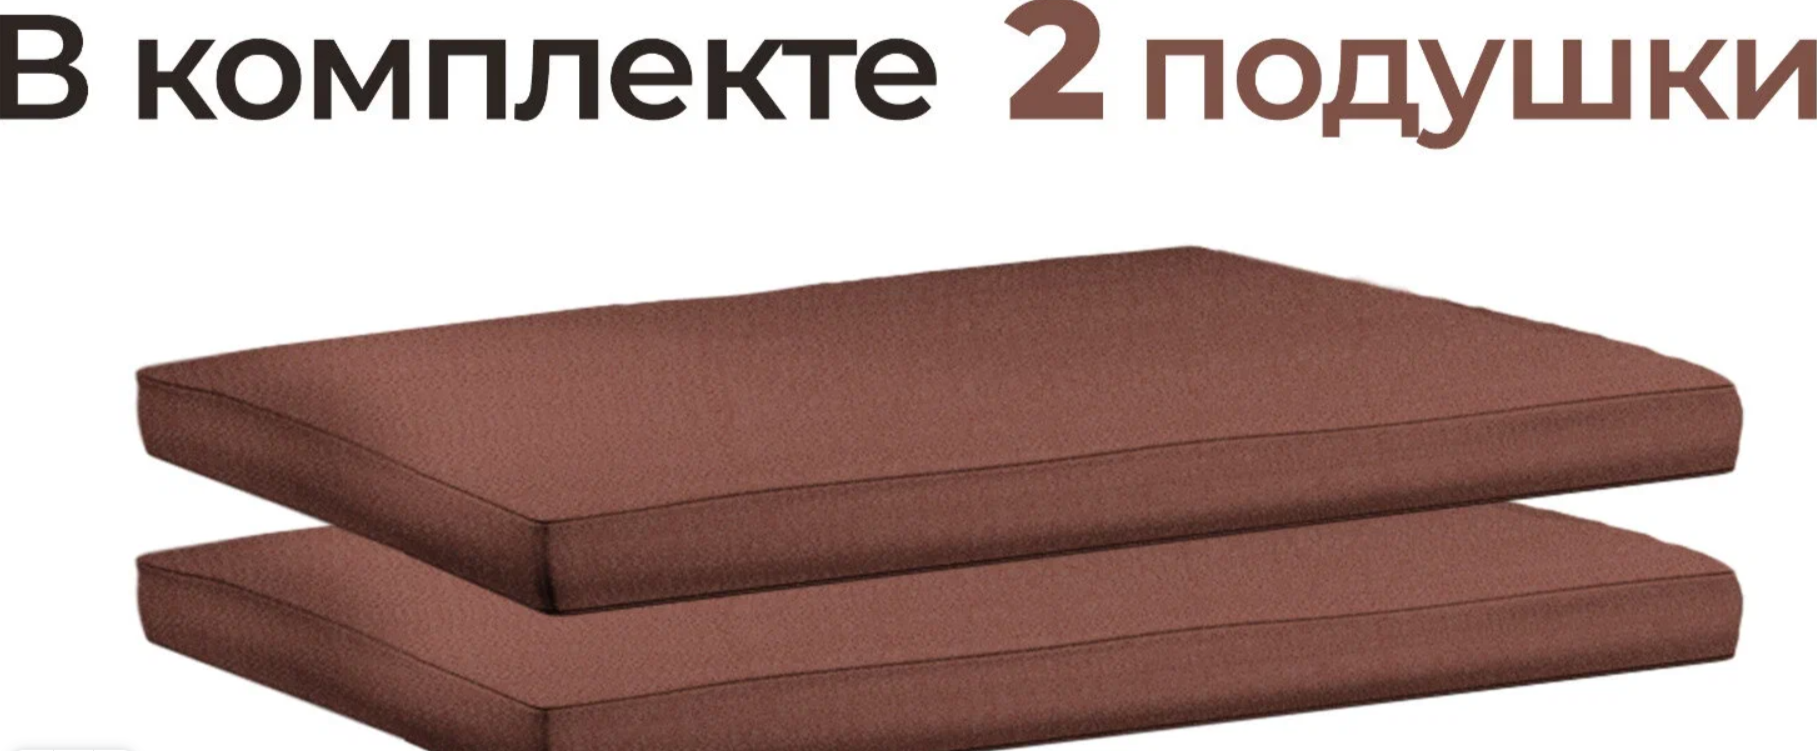 Комплект подушек для двухместного дивана Дачник Демидов 2ПОДКОР 54см 52см коричневый